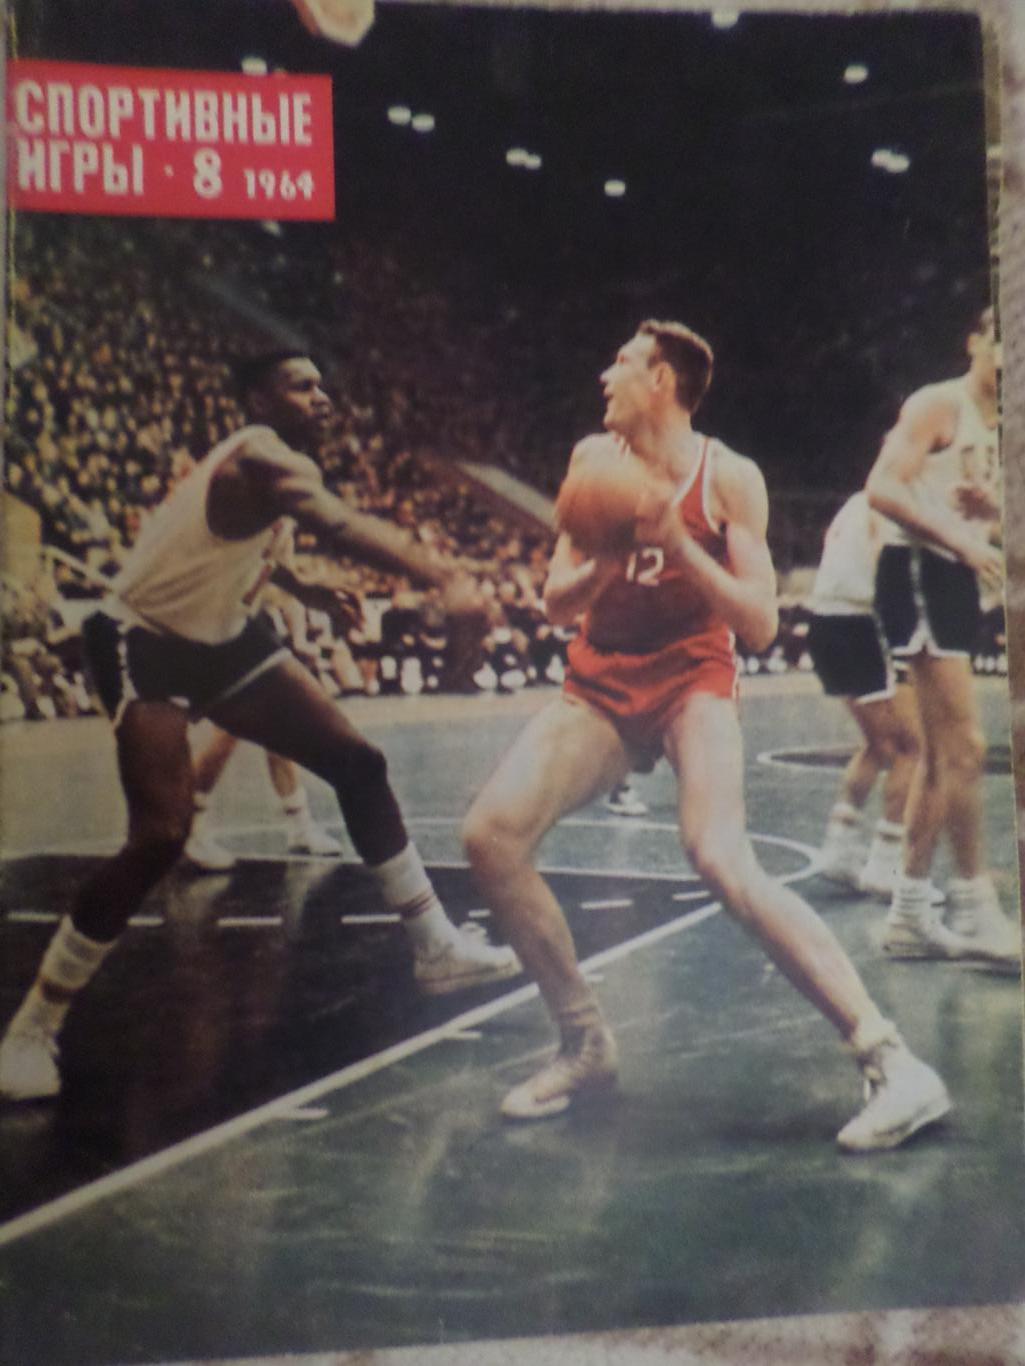 журнал Спортивные игры номер 8 1964 г